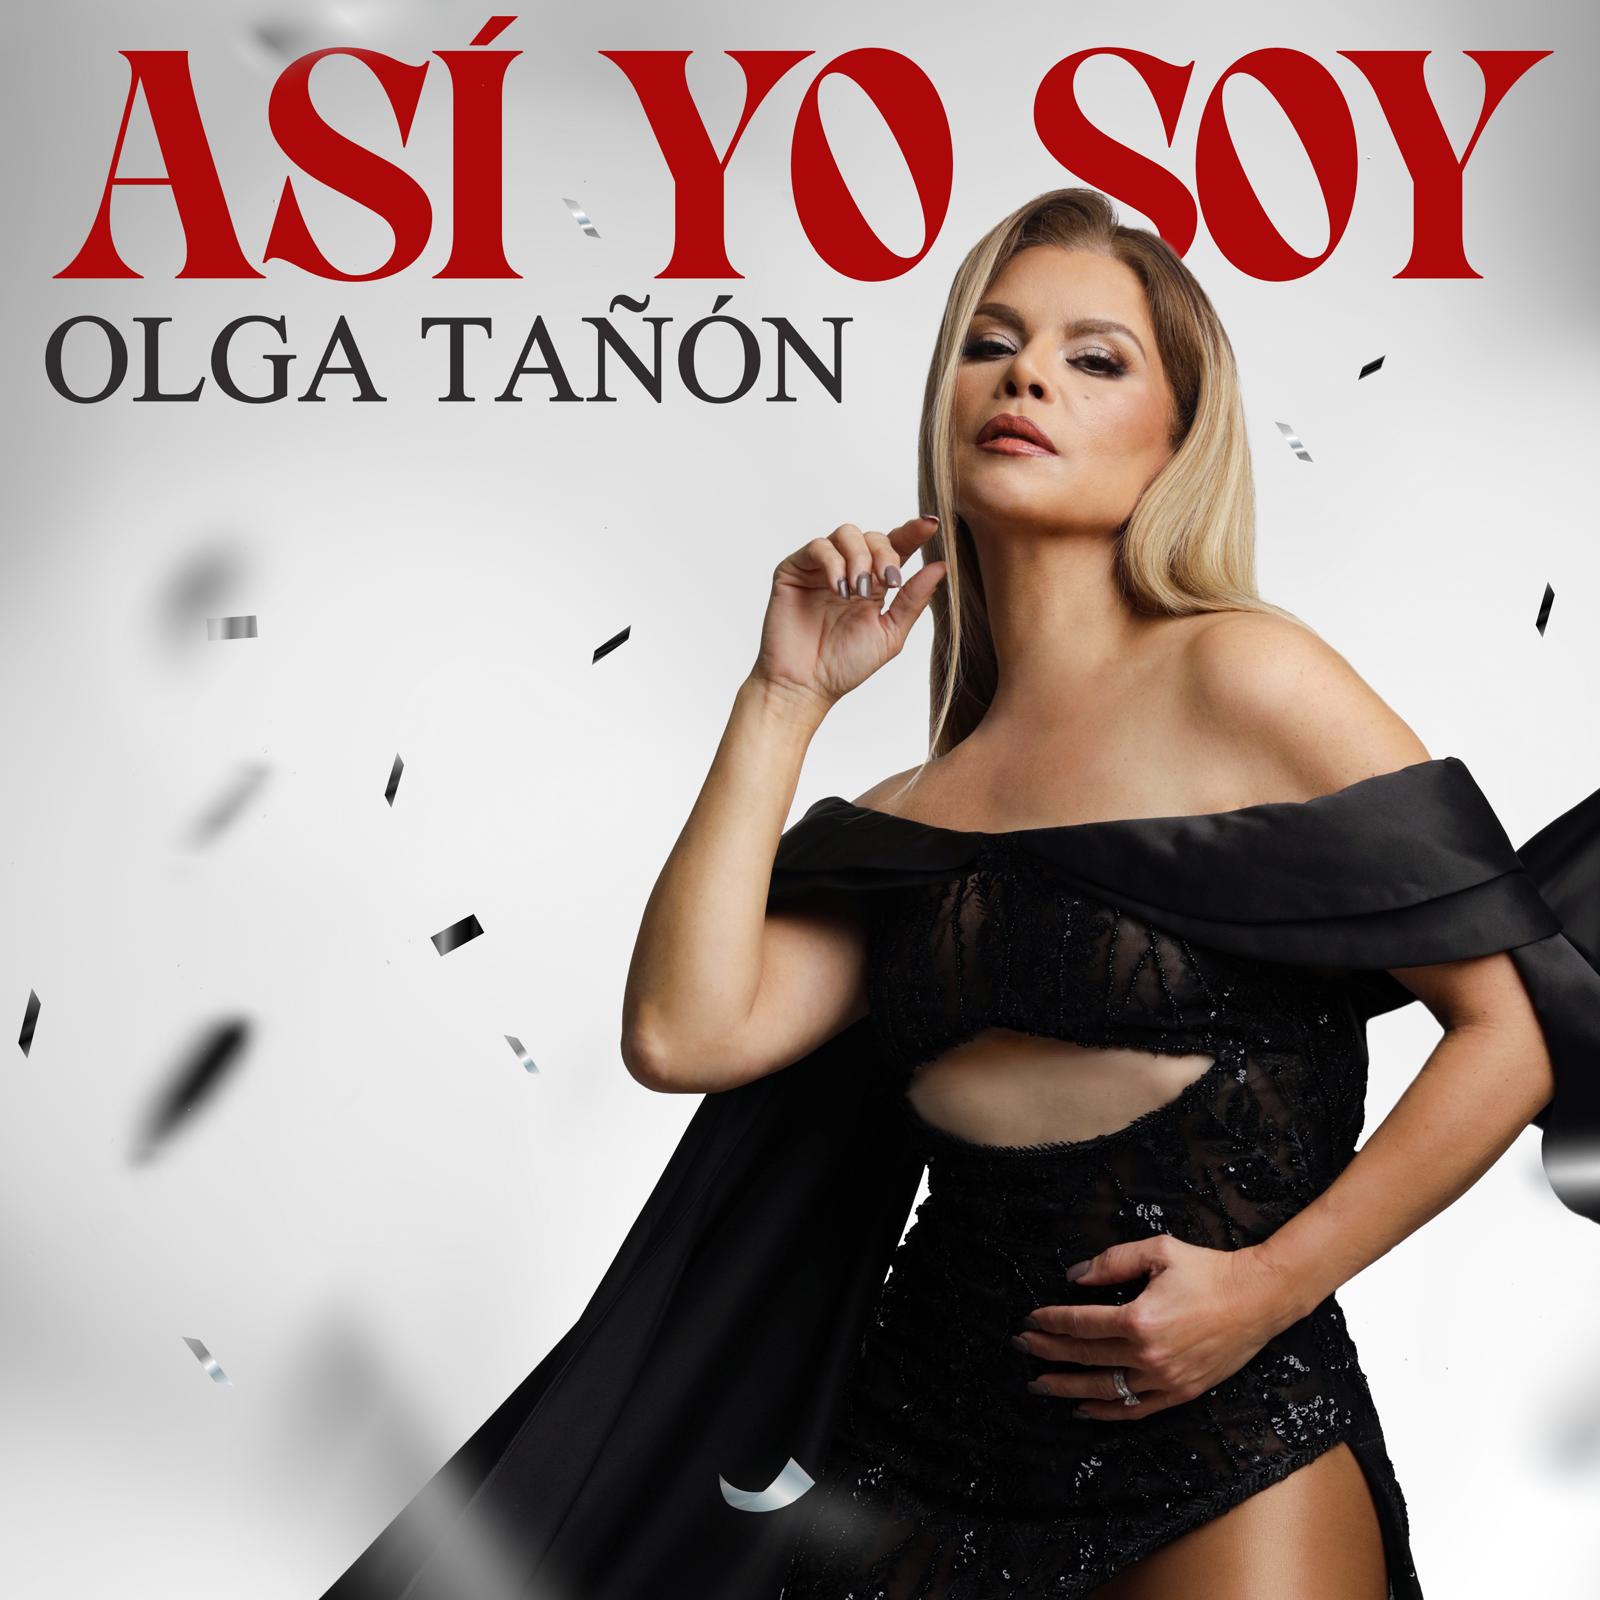 Olga Tañón irrumpe en la escena musical con “Así Yo Soy”